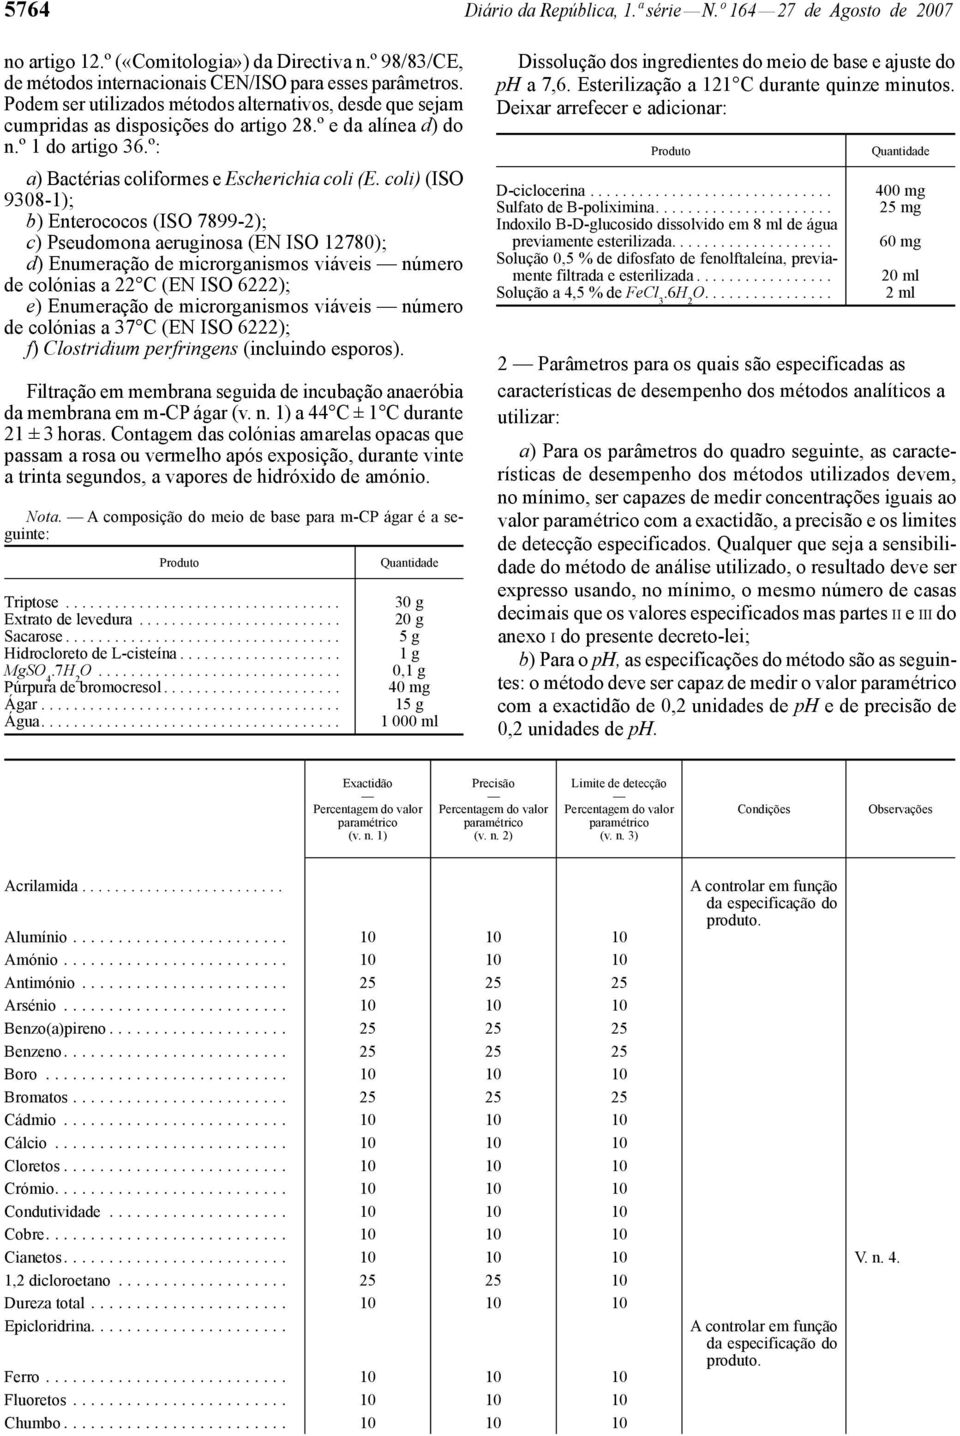 coli) (ISO 9308-1); b) Enterococos (ISO 7899-2); c) Pseudomona aeruginosa (EN ISO 12780); d) Enumeração de microrganismos viáveis número de colónias a 22 C (EN ISO 6222); e) Enumeração de